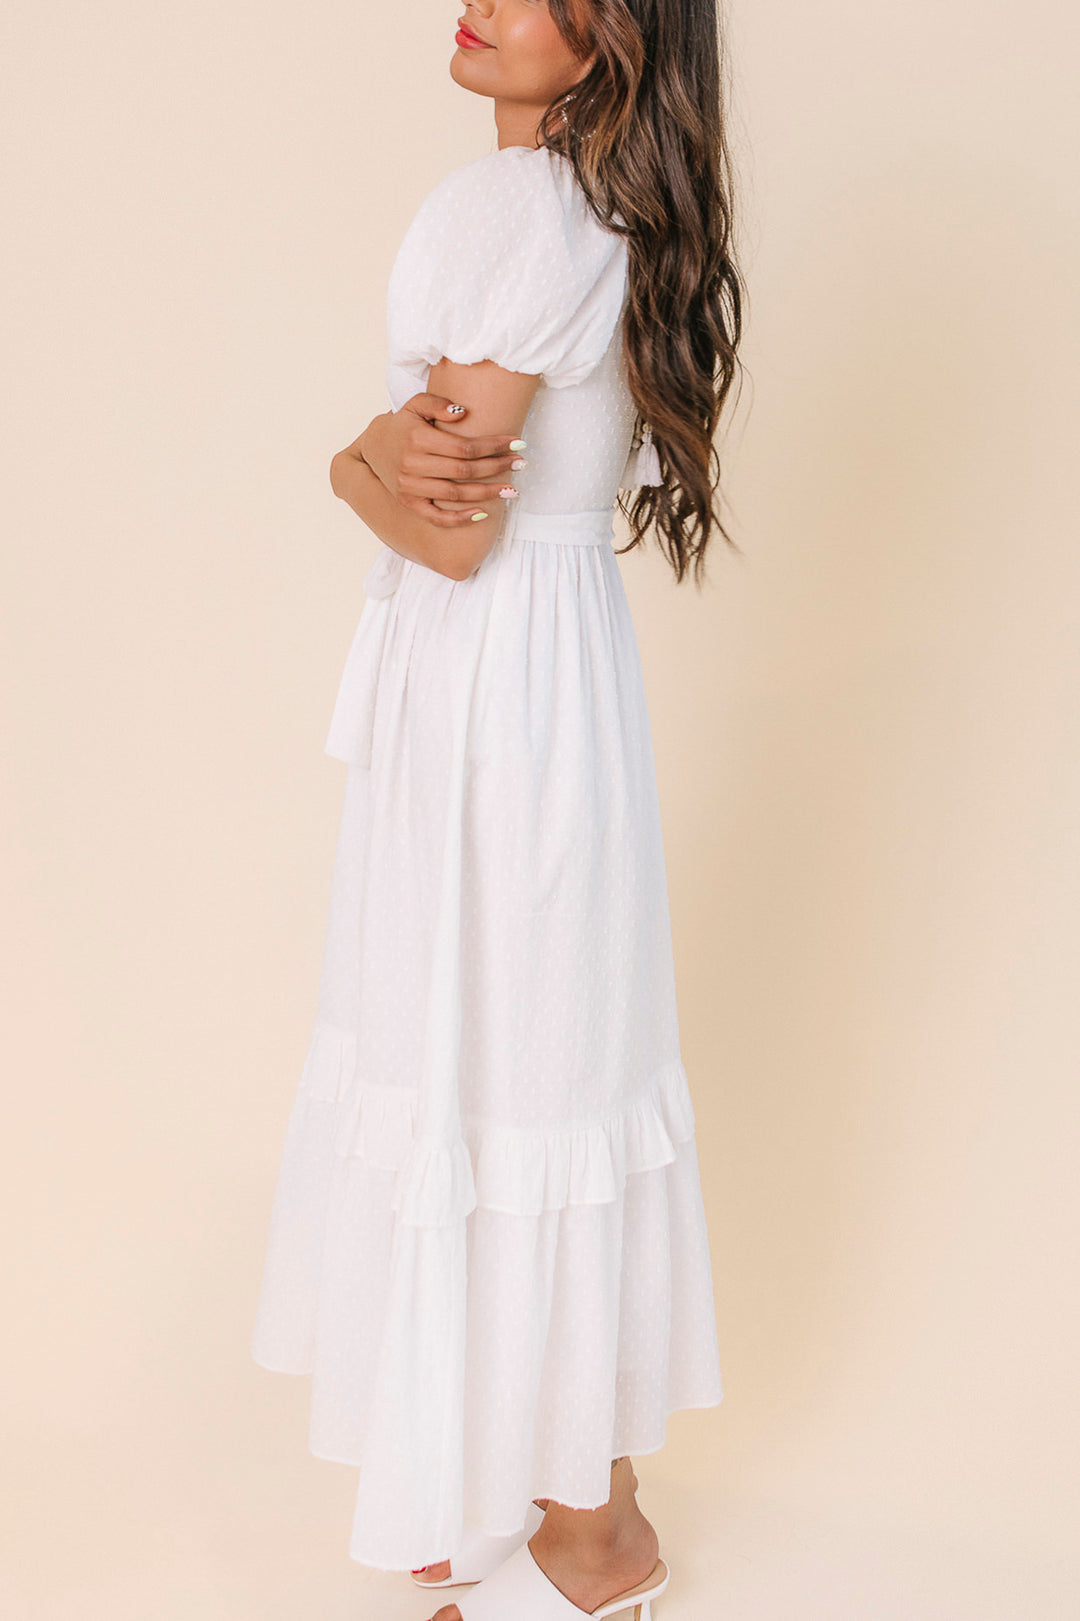 Antoinette Dress in White